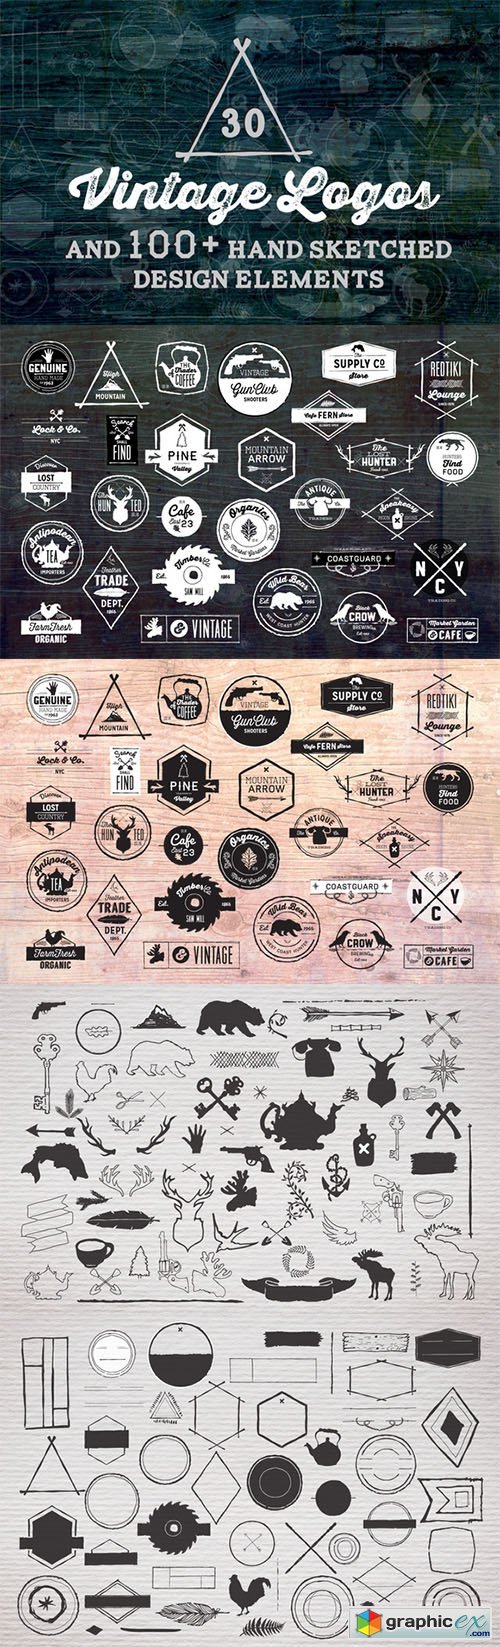  30 Vintage Logos + Design Elements